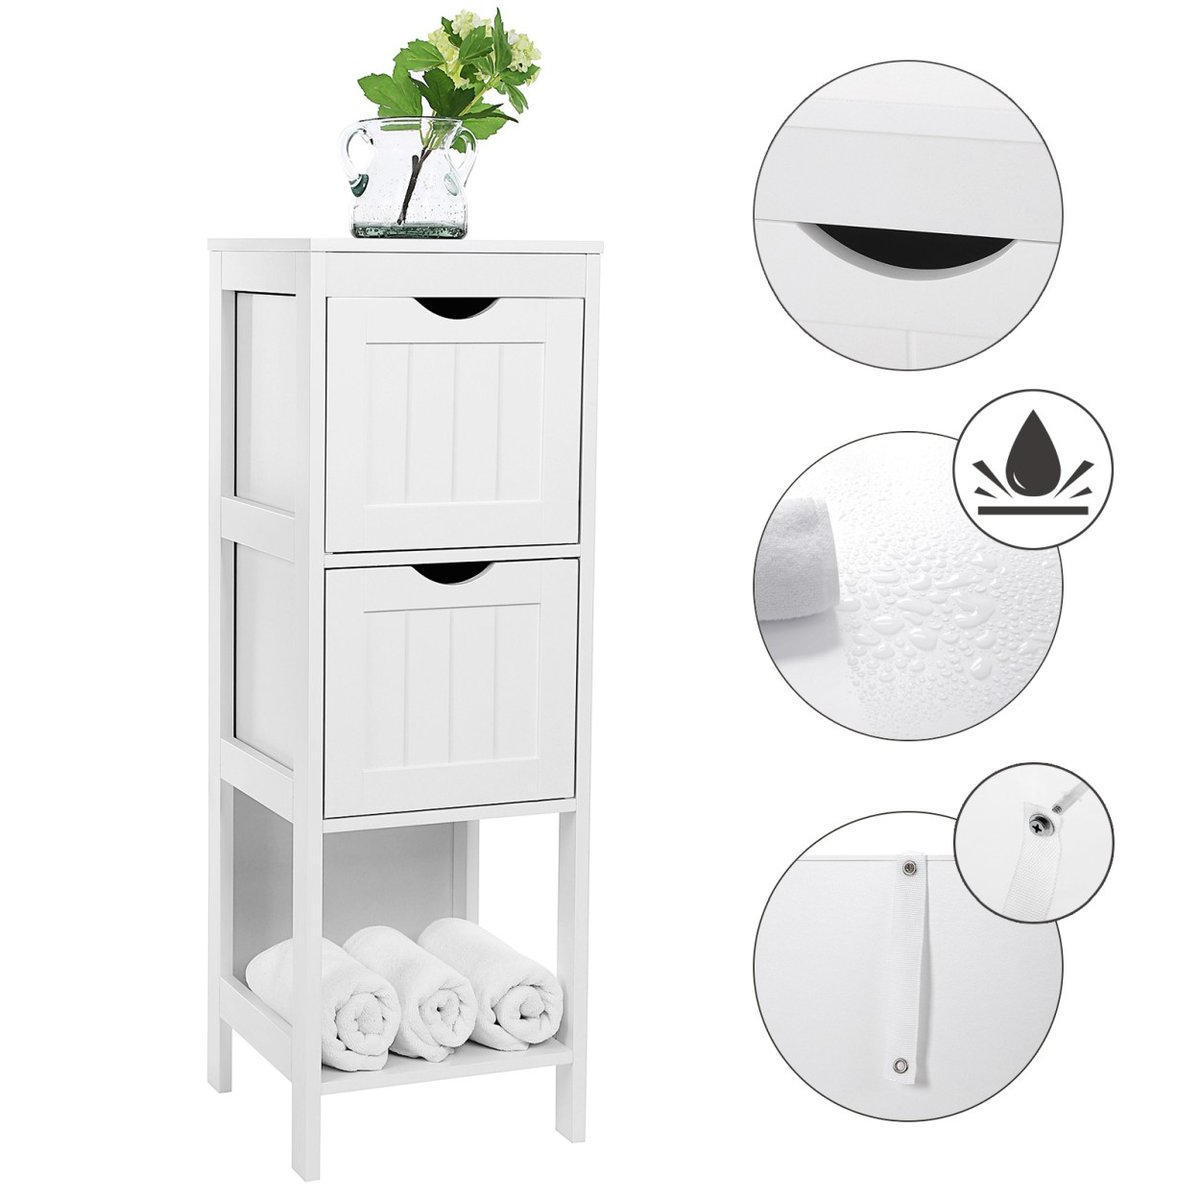 VASAGLE Songmics komoda/szafka łazienkowa o wszechstronnym zastosowaniu, np. jako regał lub szafka łazienkowa z 4 półkami, doskonała również do narożnika lub jako szafa medyczna, wykonana z drewna, kolor biał